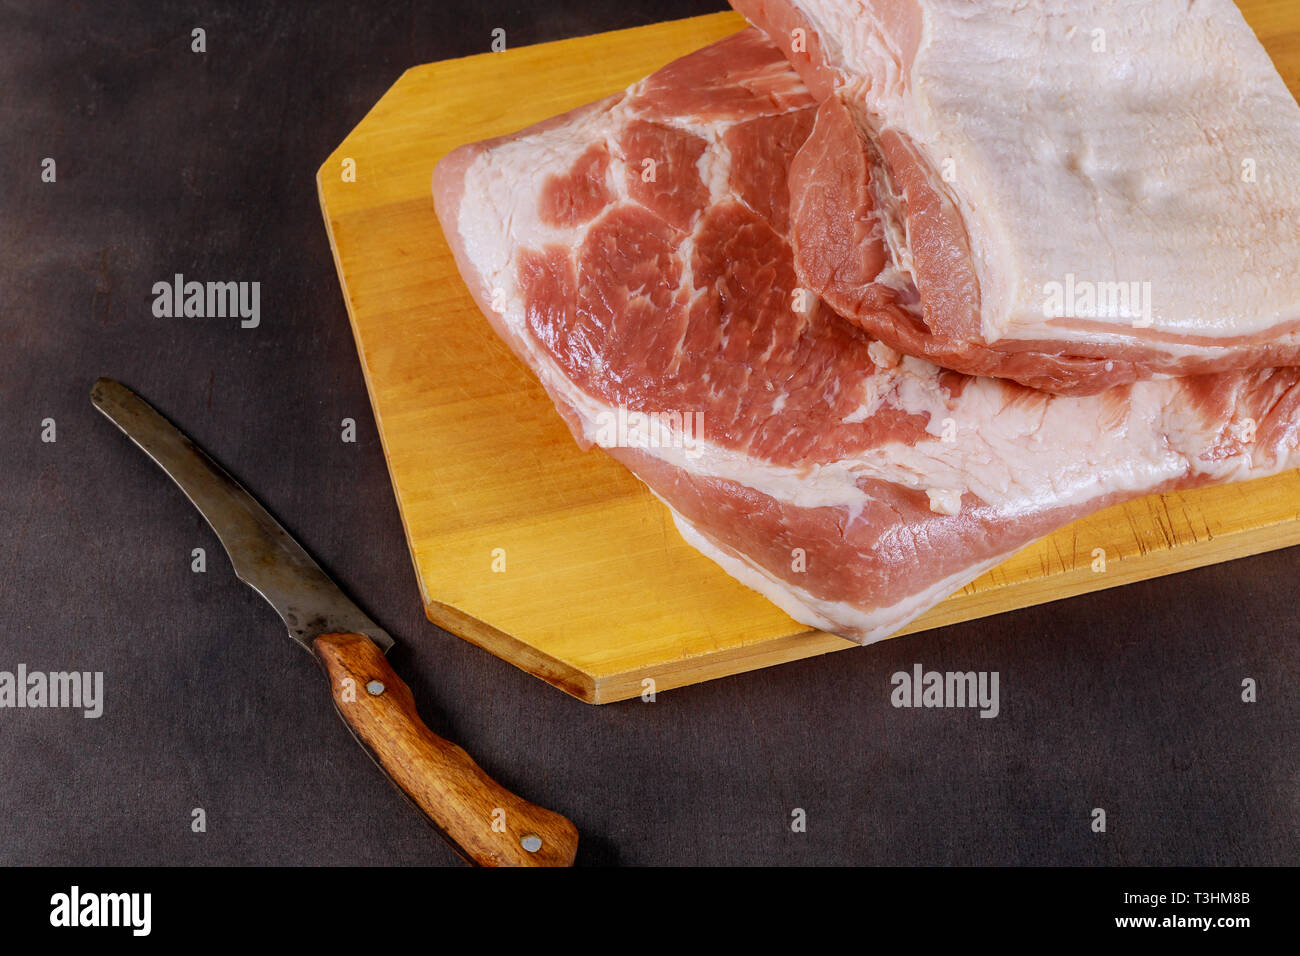 La carne de cerdo cruda de un cerdo con un cuchillo en la tabla de cortar de madera Foto de stock